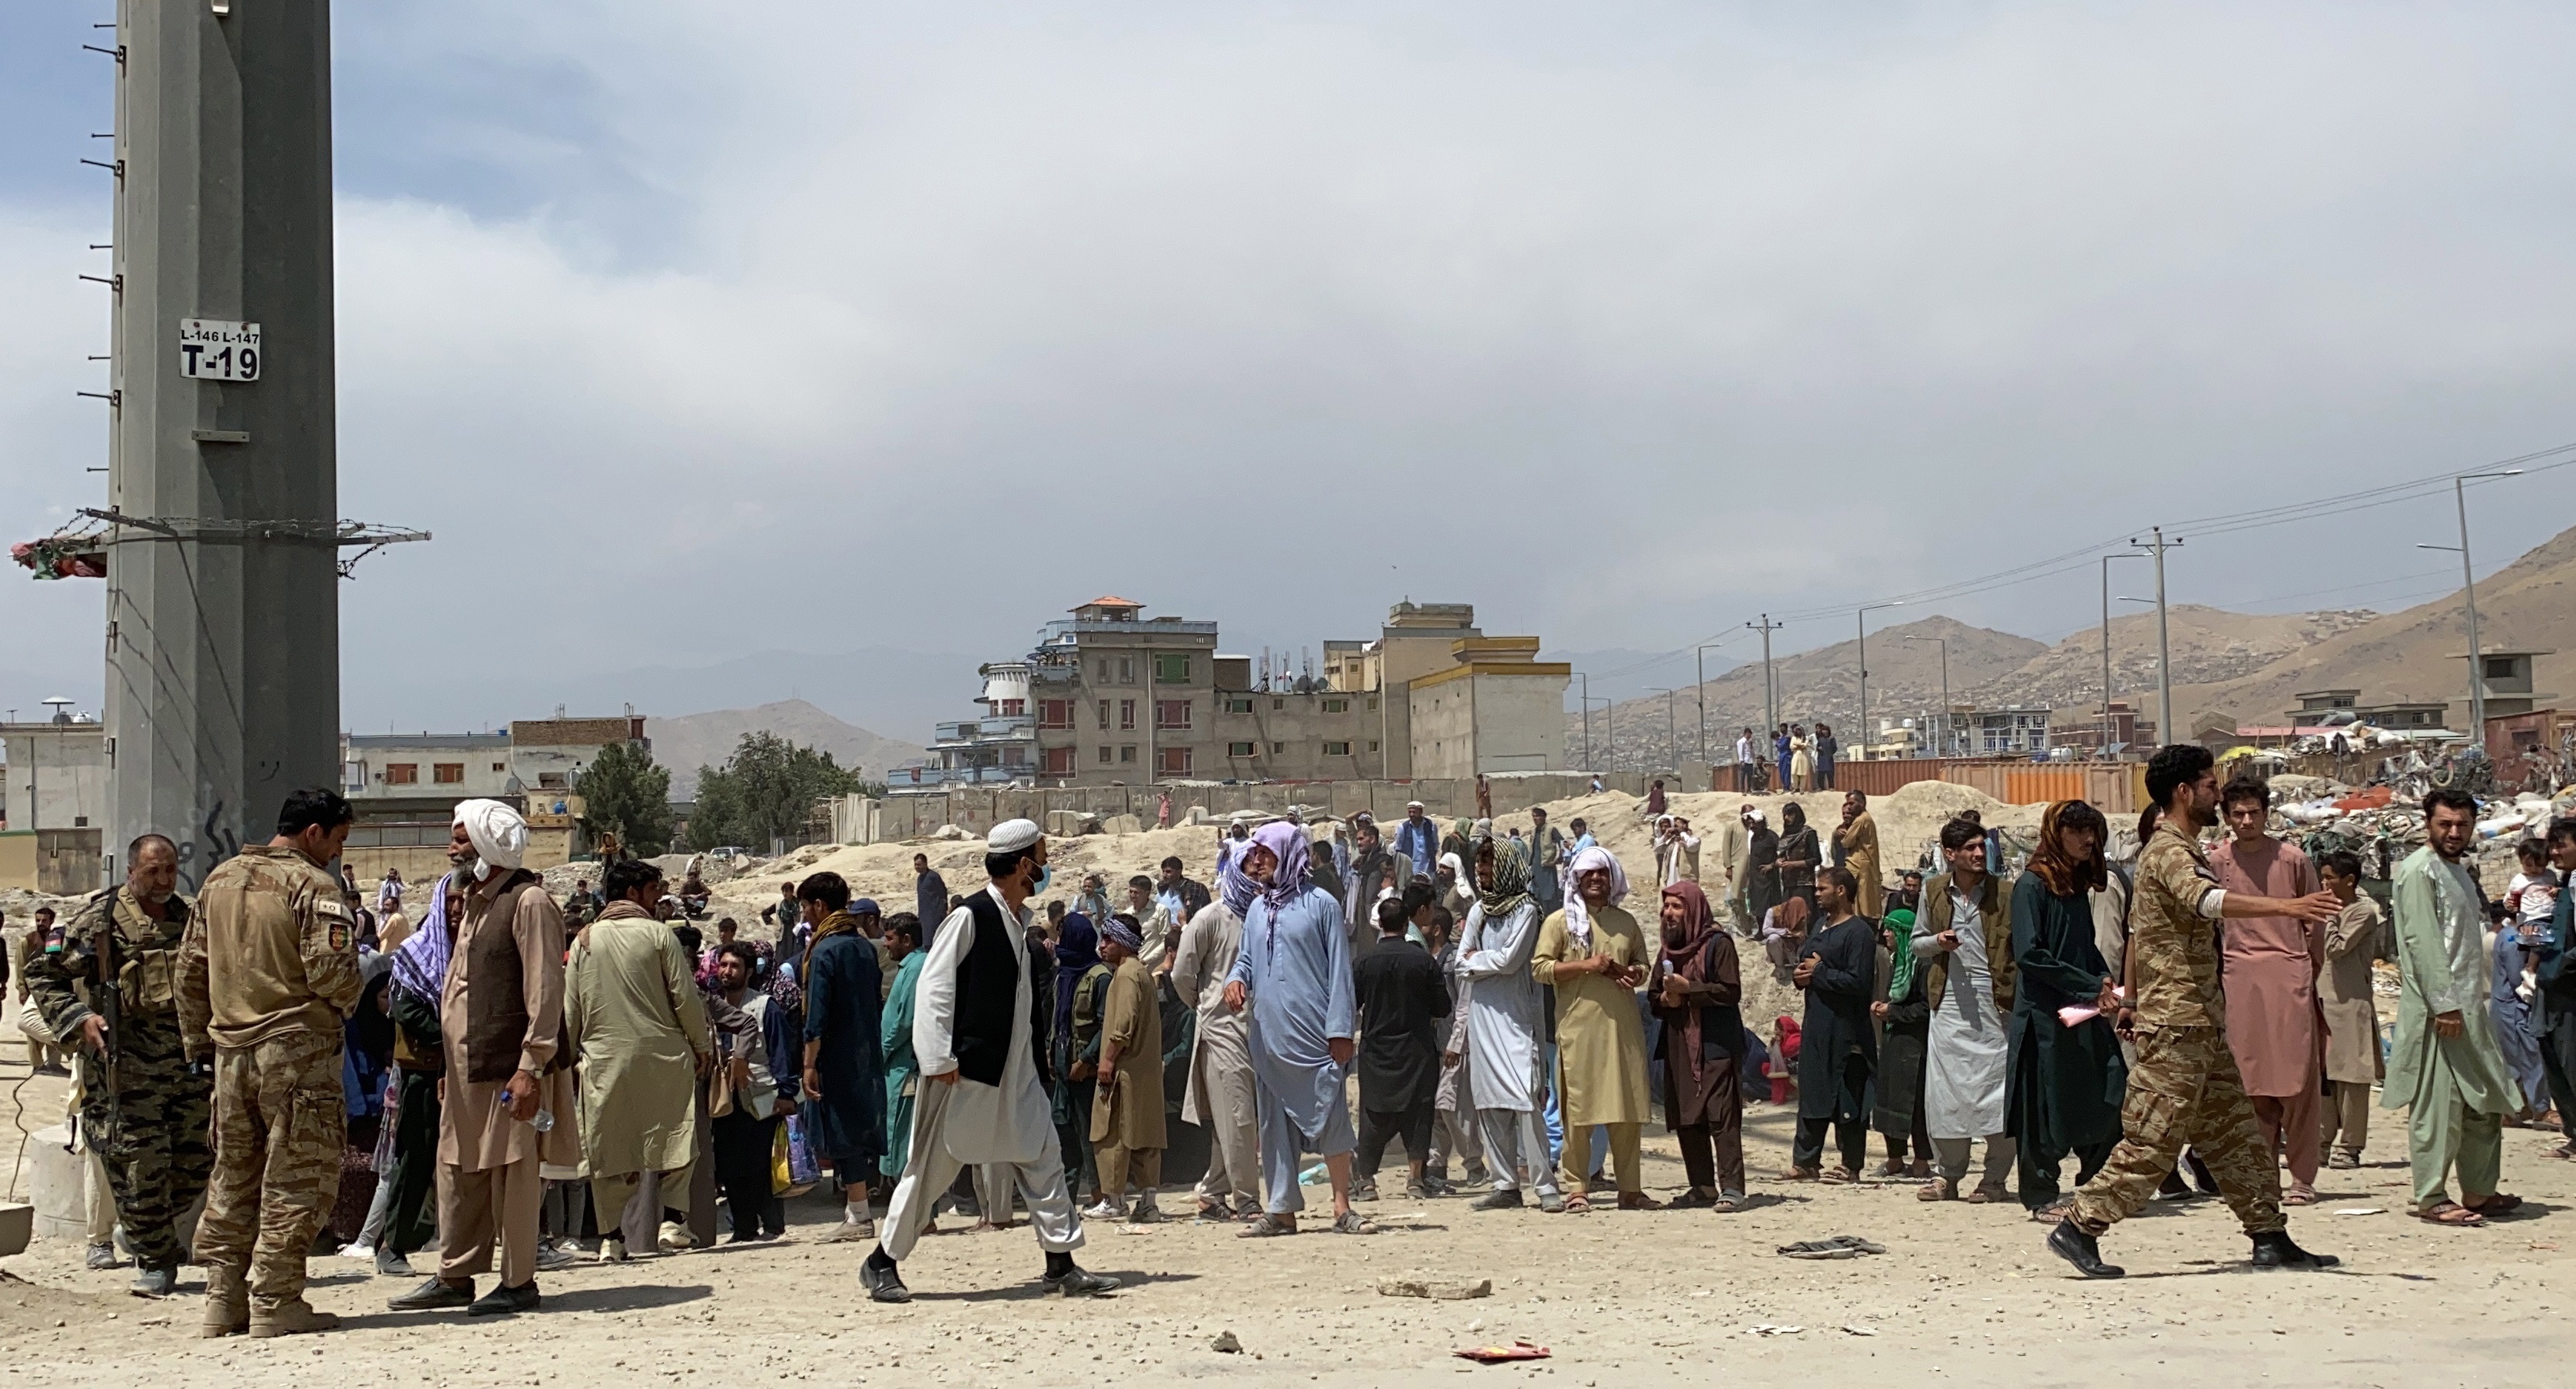 EE.UU. dice talibanes impiden acceso de afganos al aeropuerto de Kabul